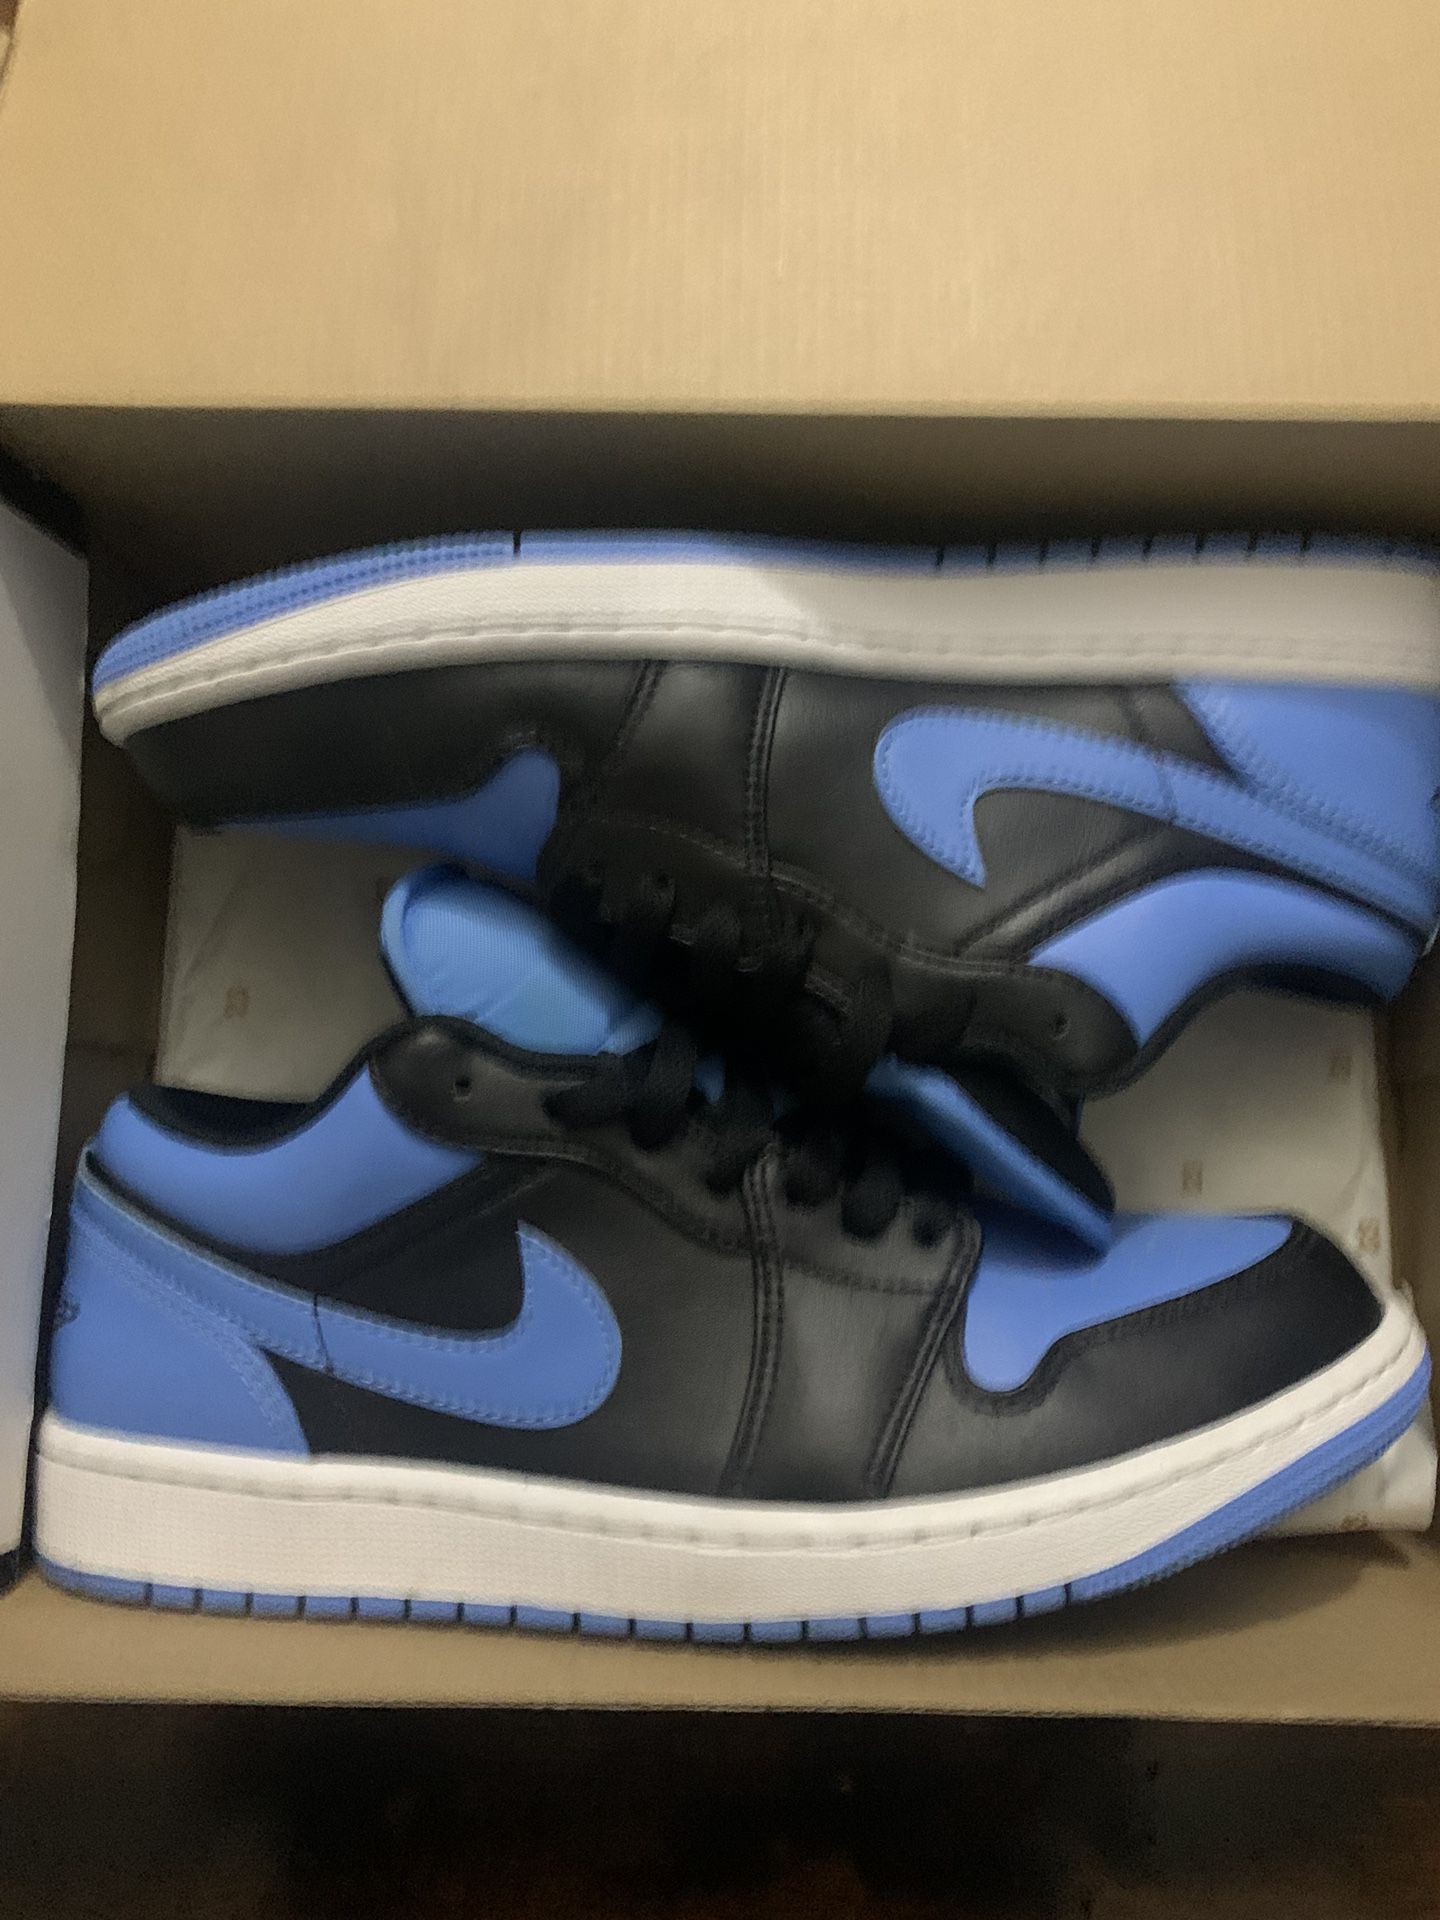 Blue Jordan 1